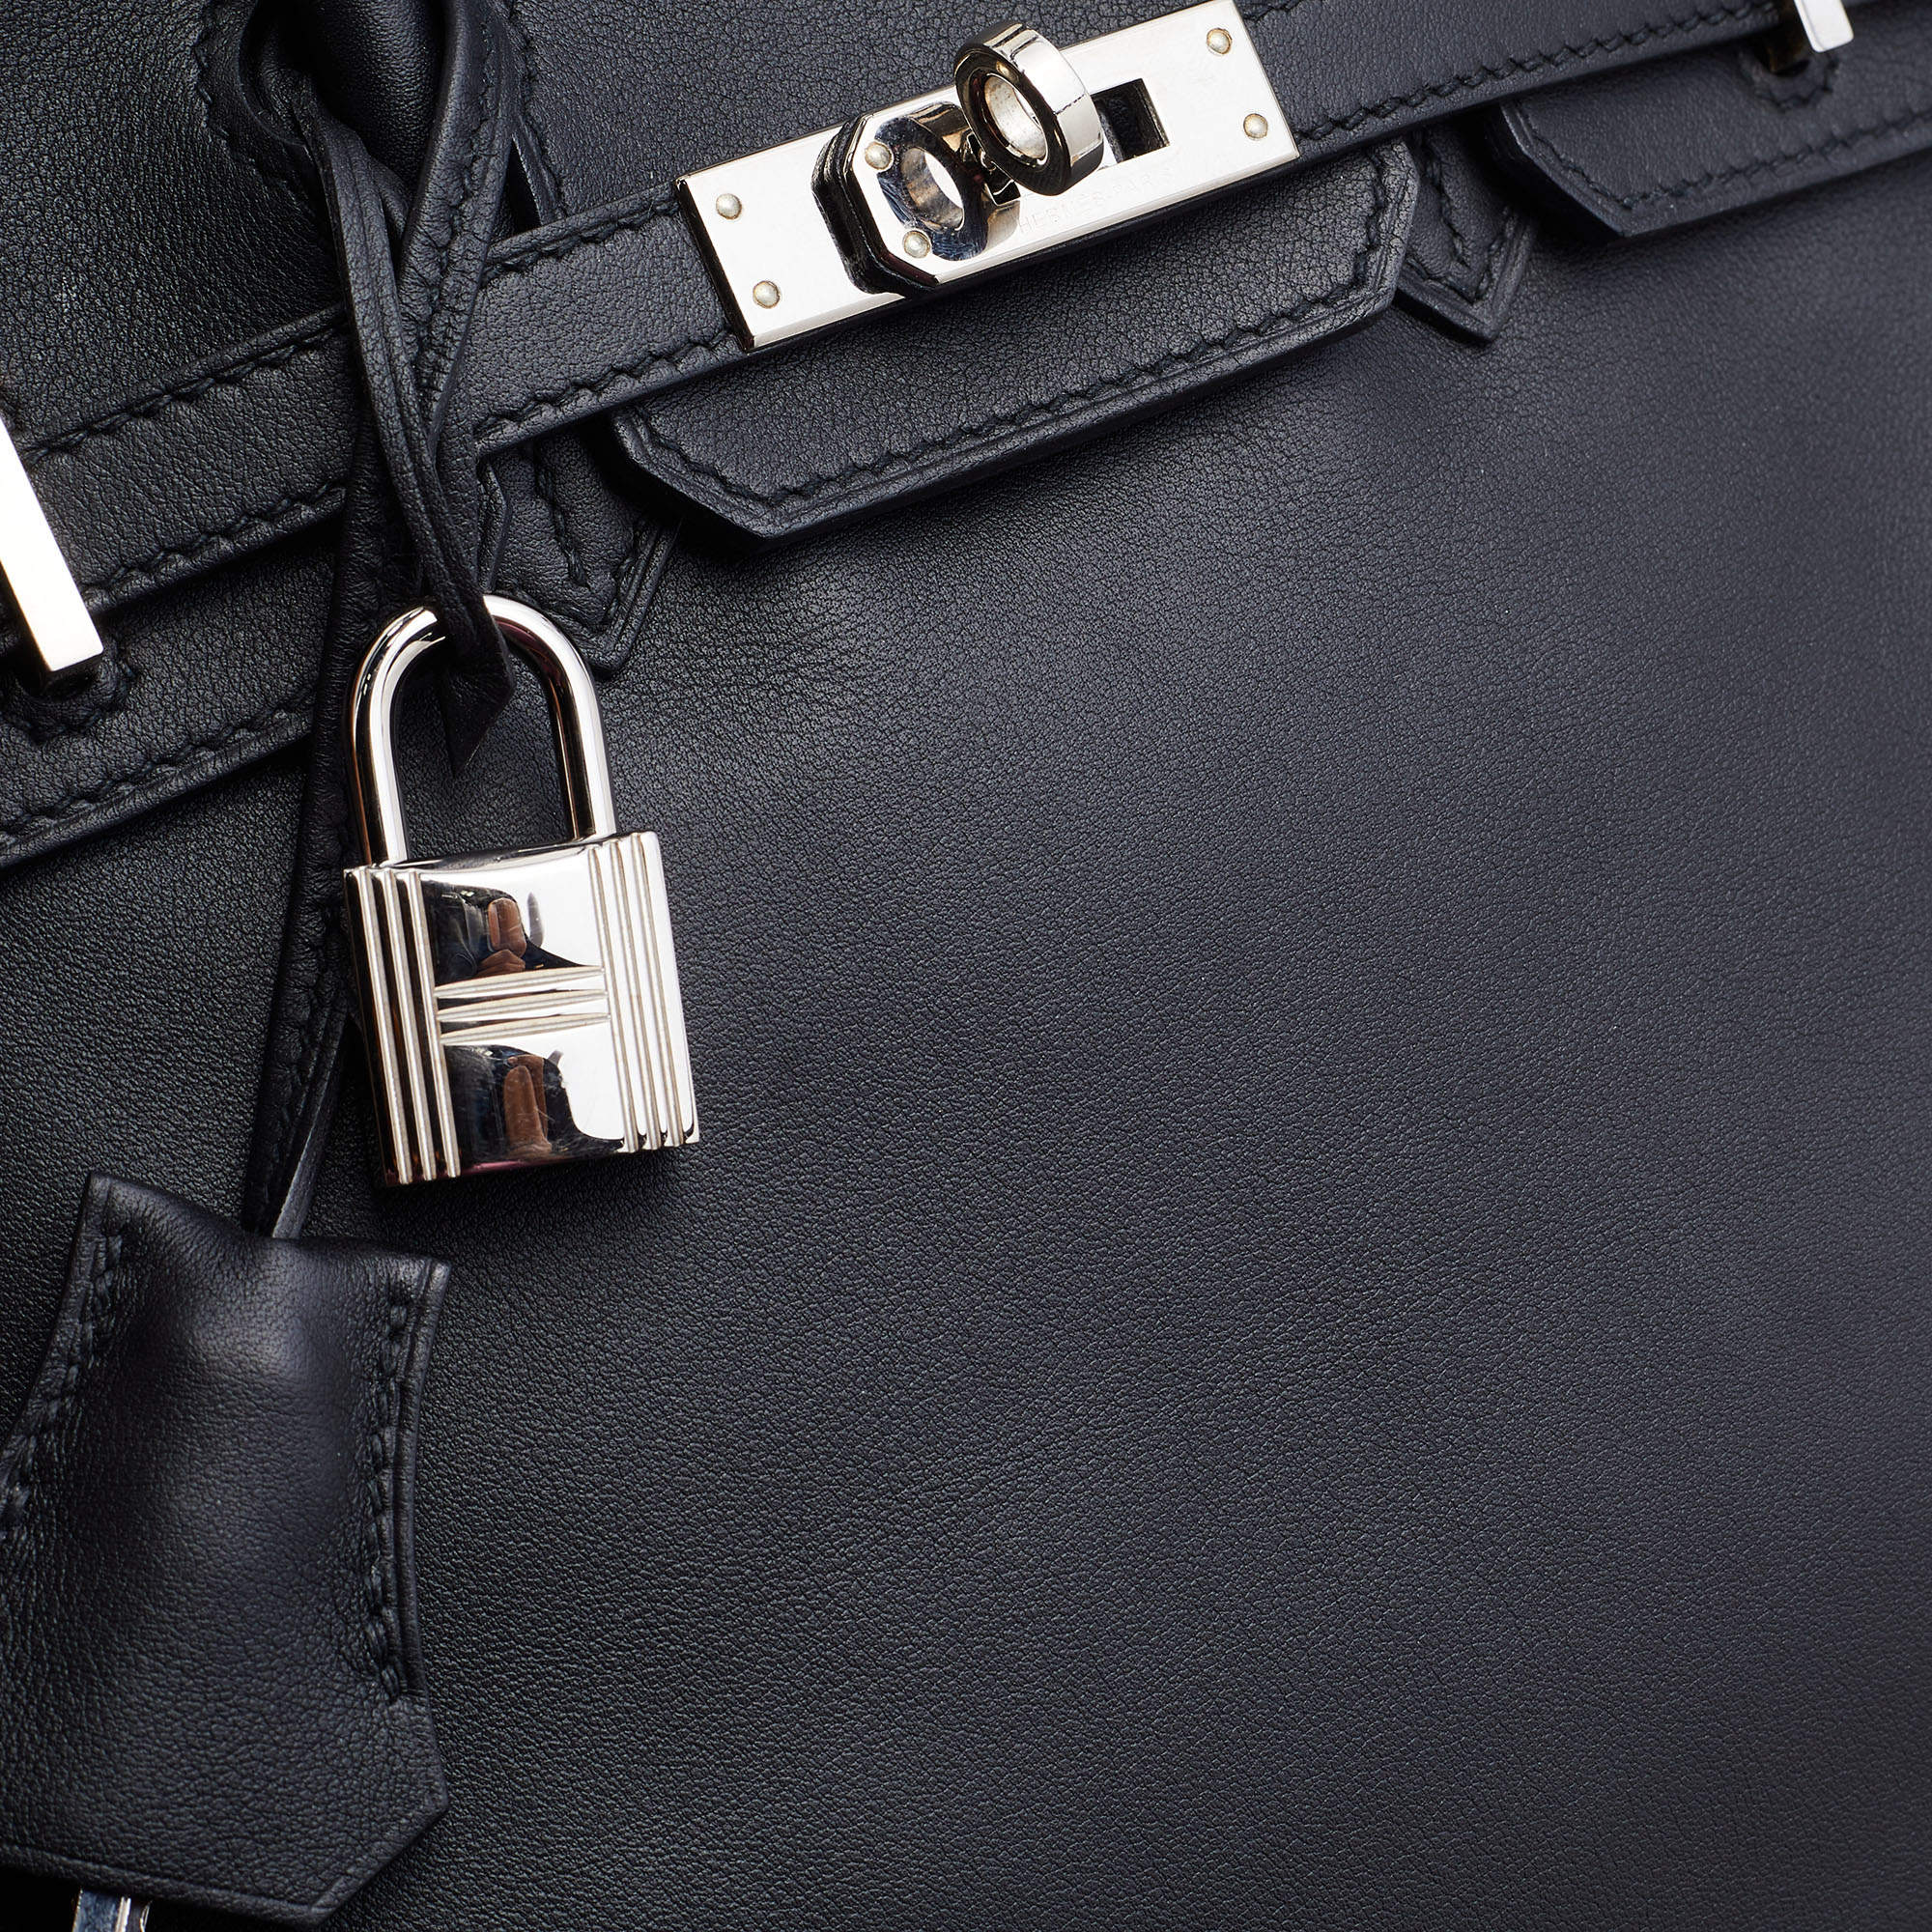 Hermès Birkin 25 Noir (Black) Swift Palladium Hardware PHW — The